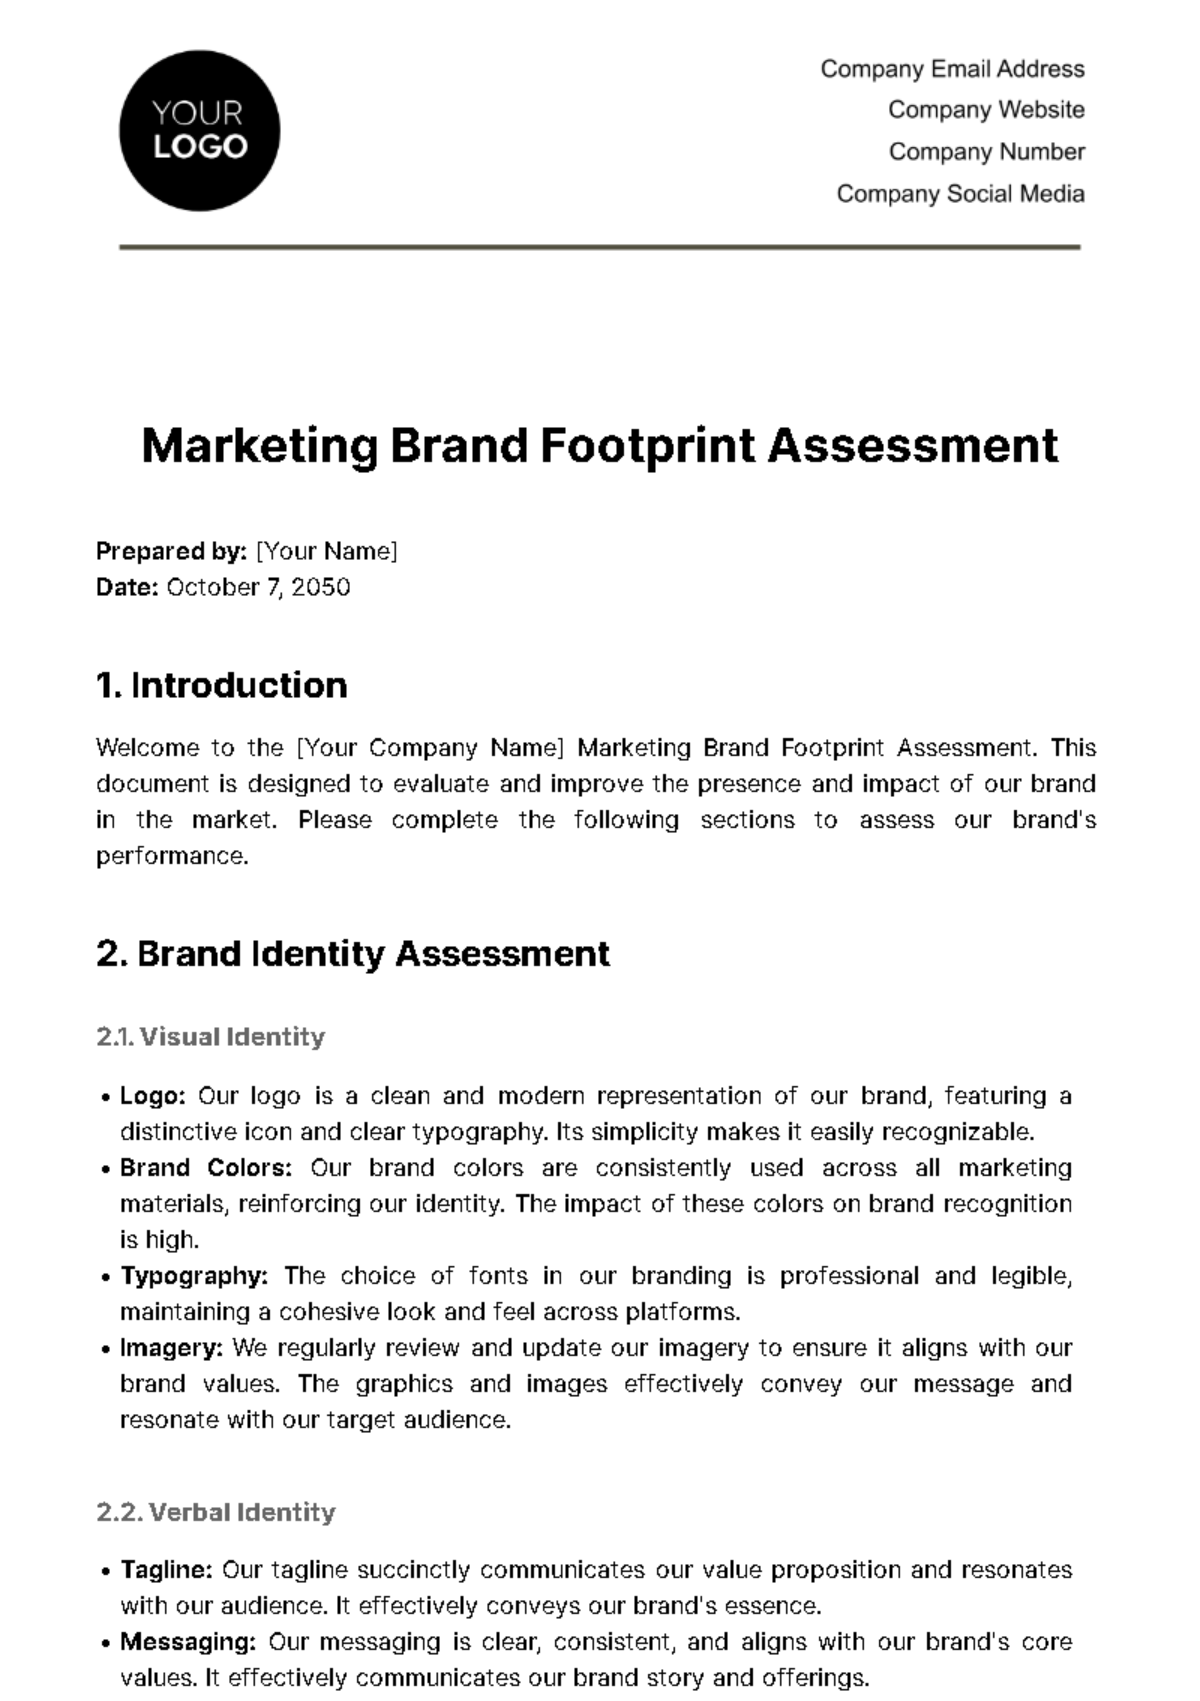 Free Marketing Brand Footprint Assessment Template